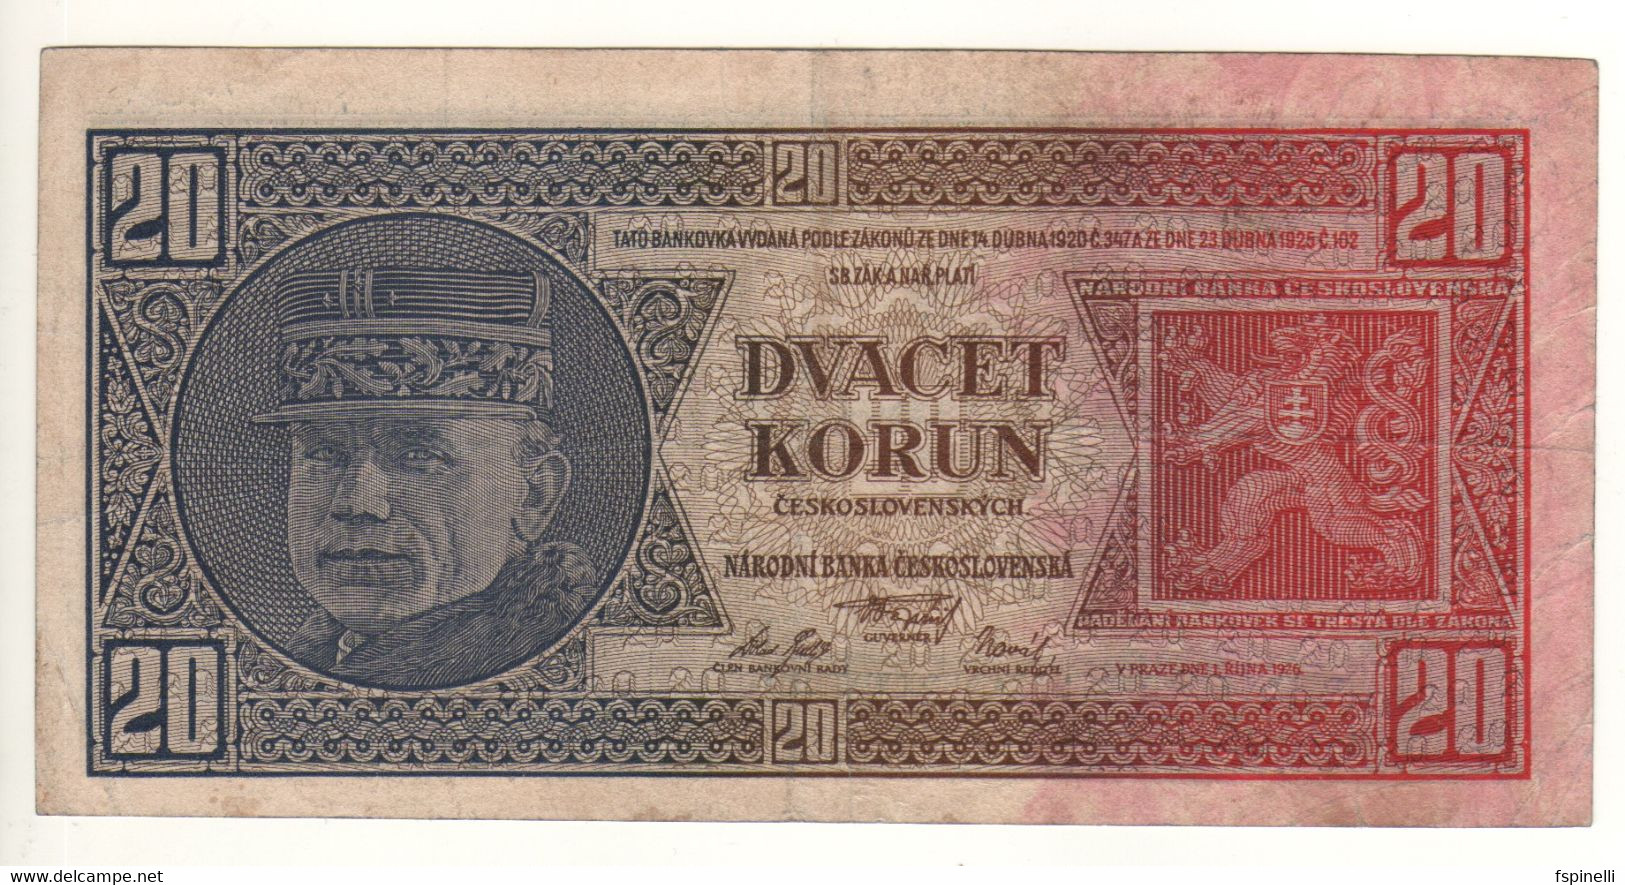 CZECHOSLOVAKIA   20 Korun   P21a    (1926  - General Milan Rastislav Stefánik / Dr. Alois Rasin ) - Czechoslovakia